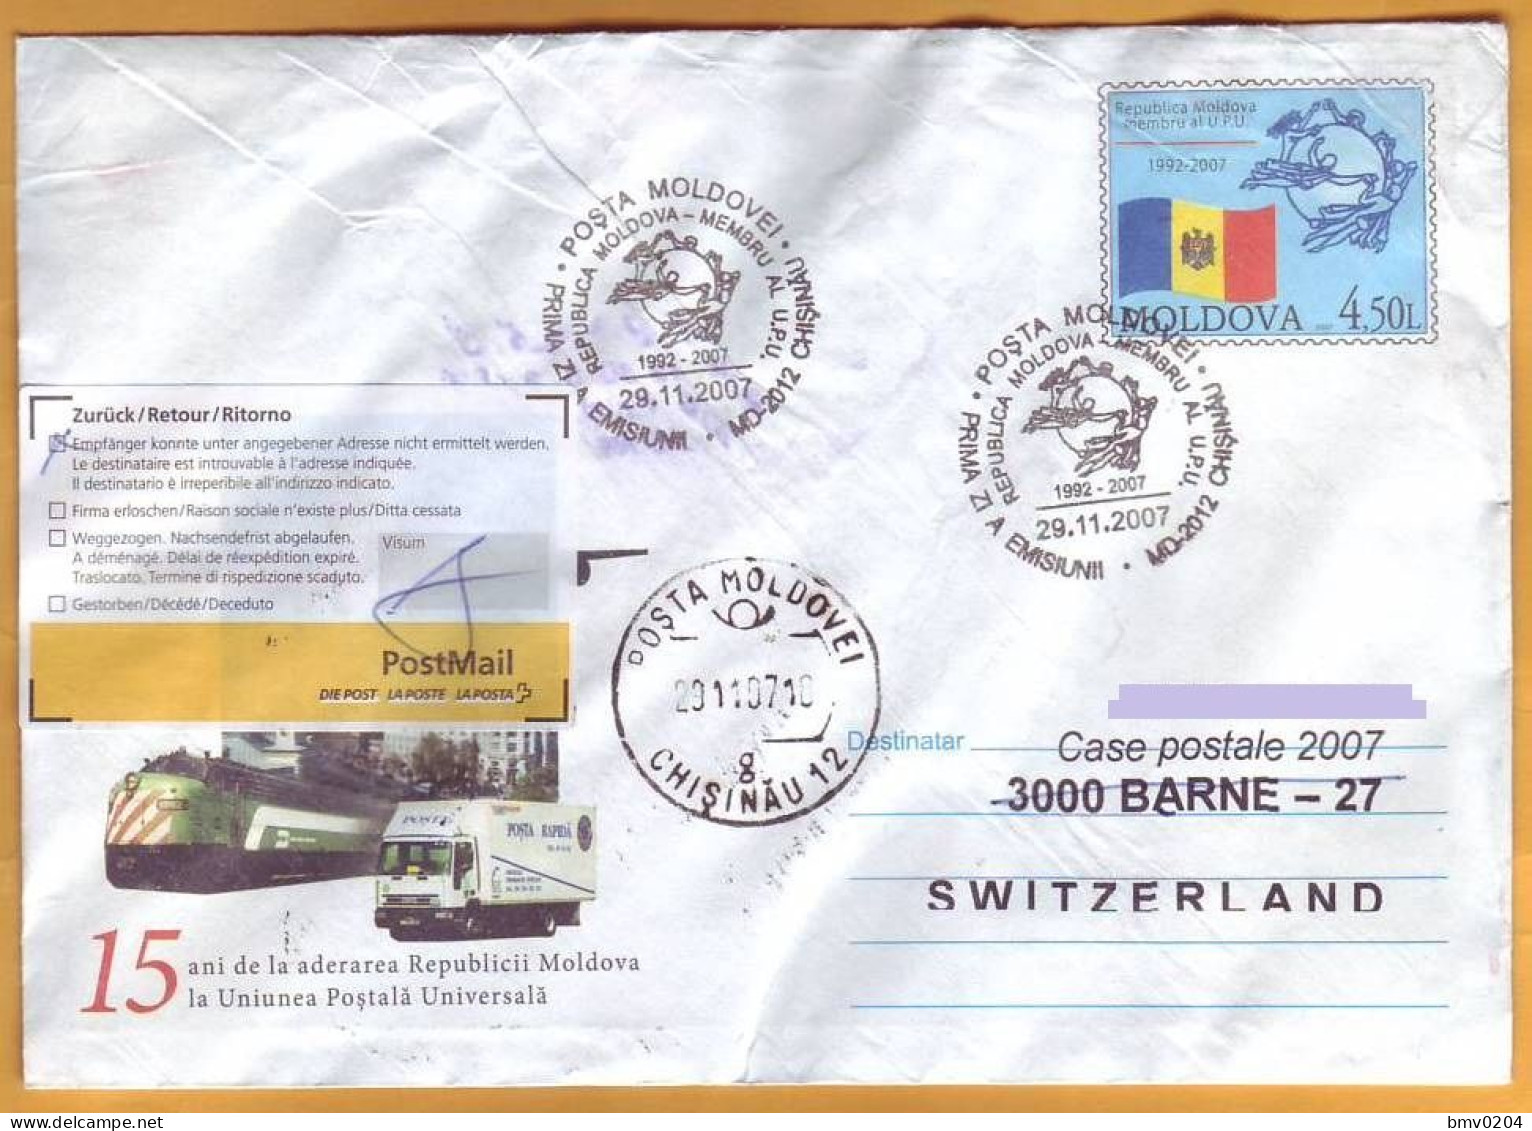 2007 Moldova Moldavie  FDC Cover Universal Postal Union - Moldova